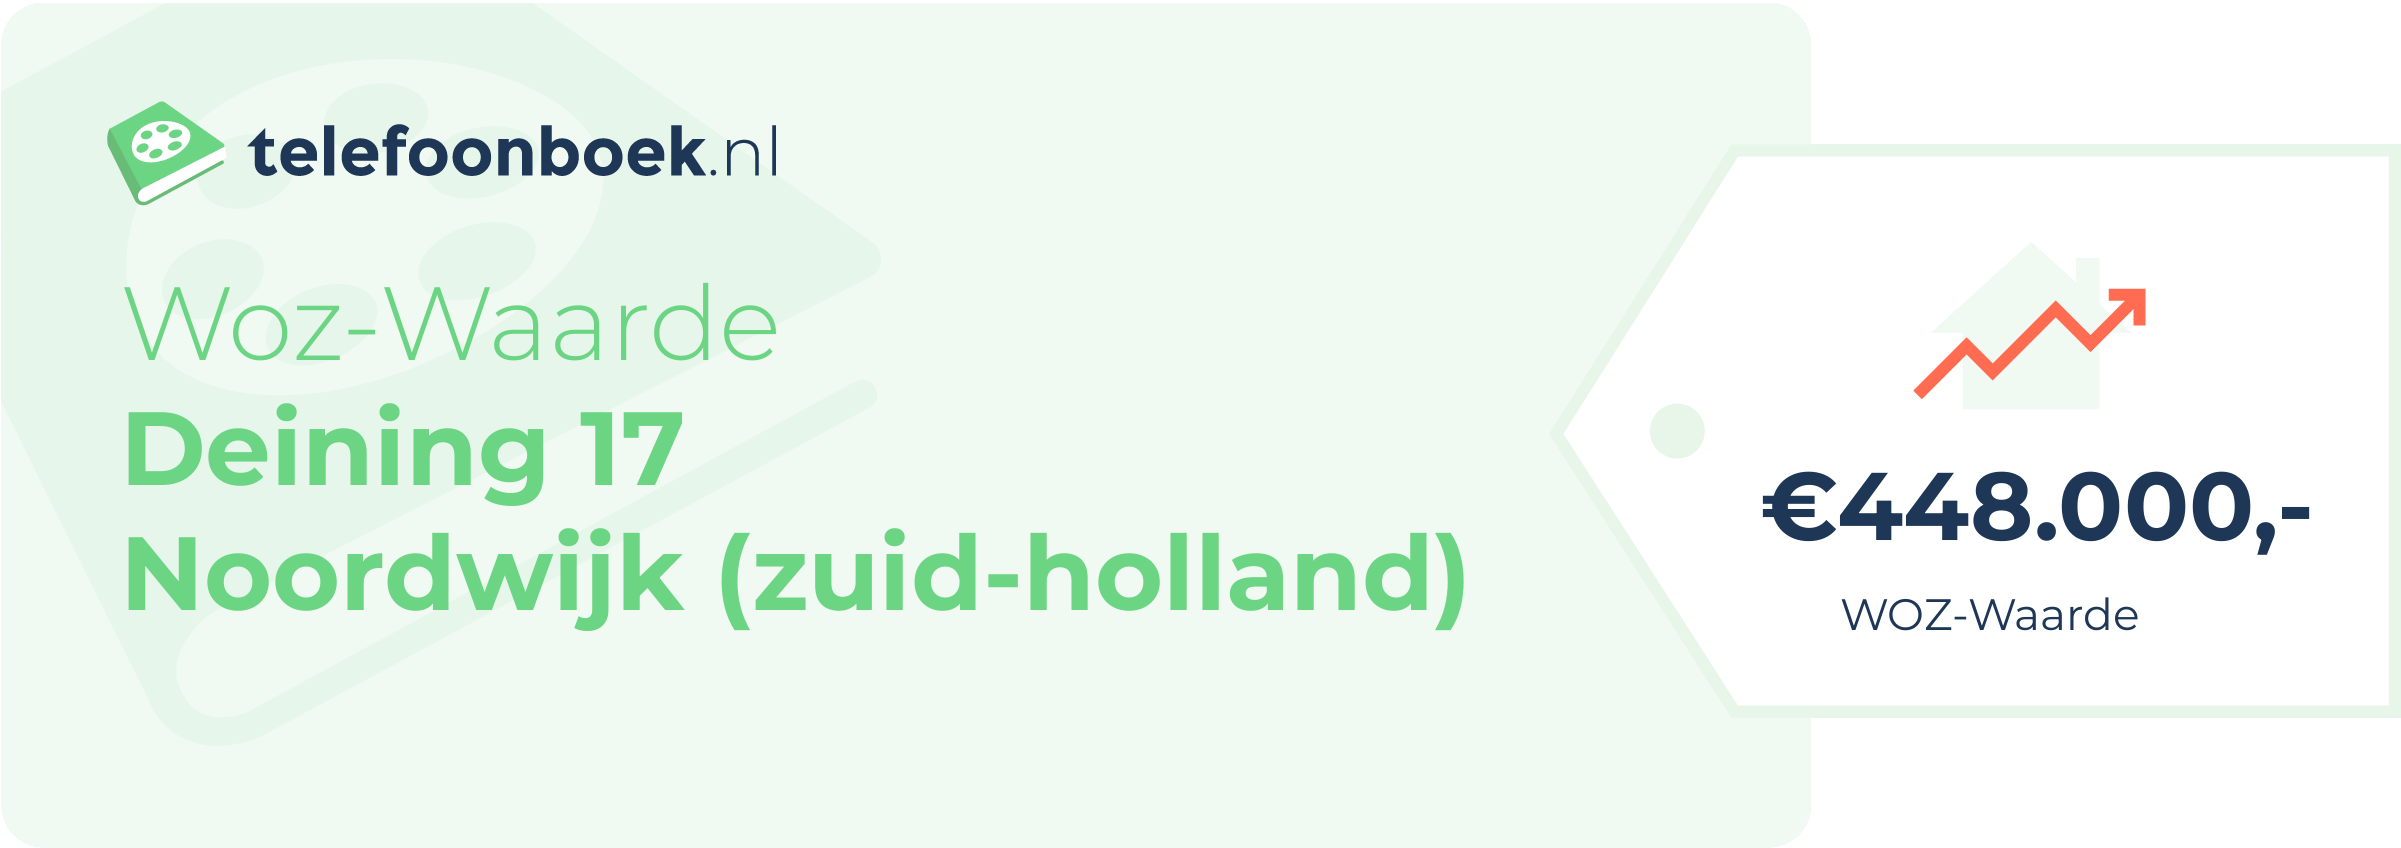 WOZ-waarde Deining 17 Noordwijk (Zuid-Holland)